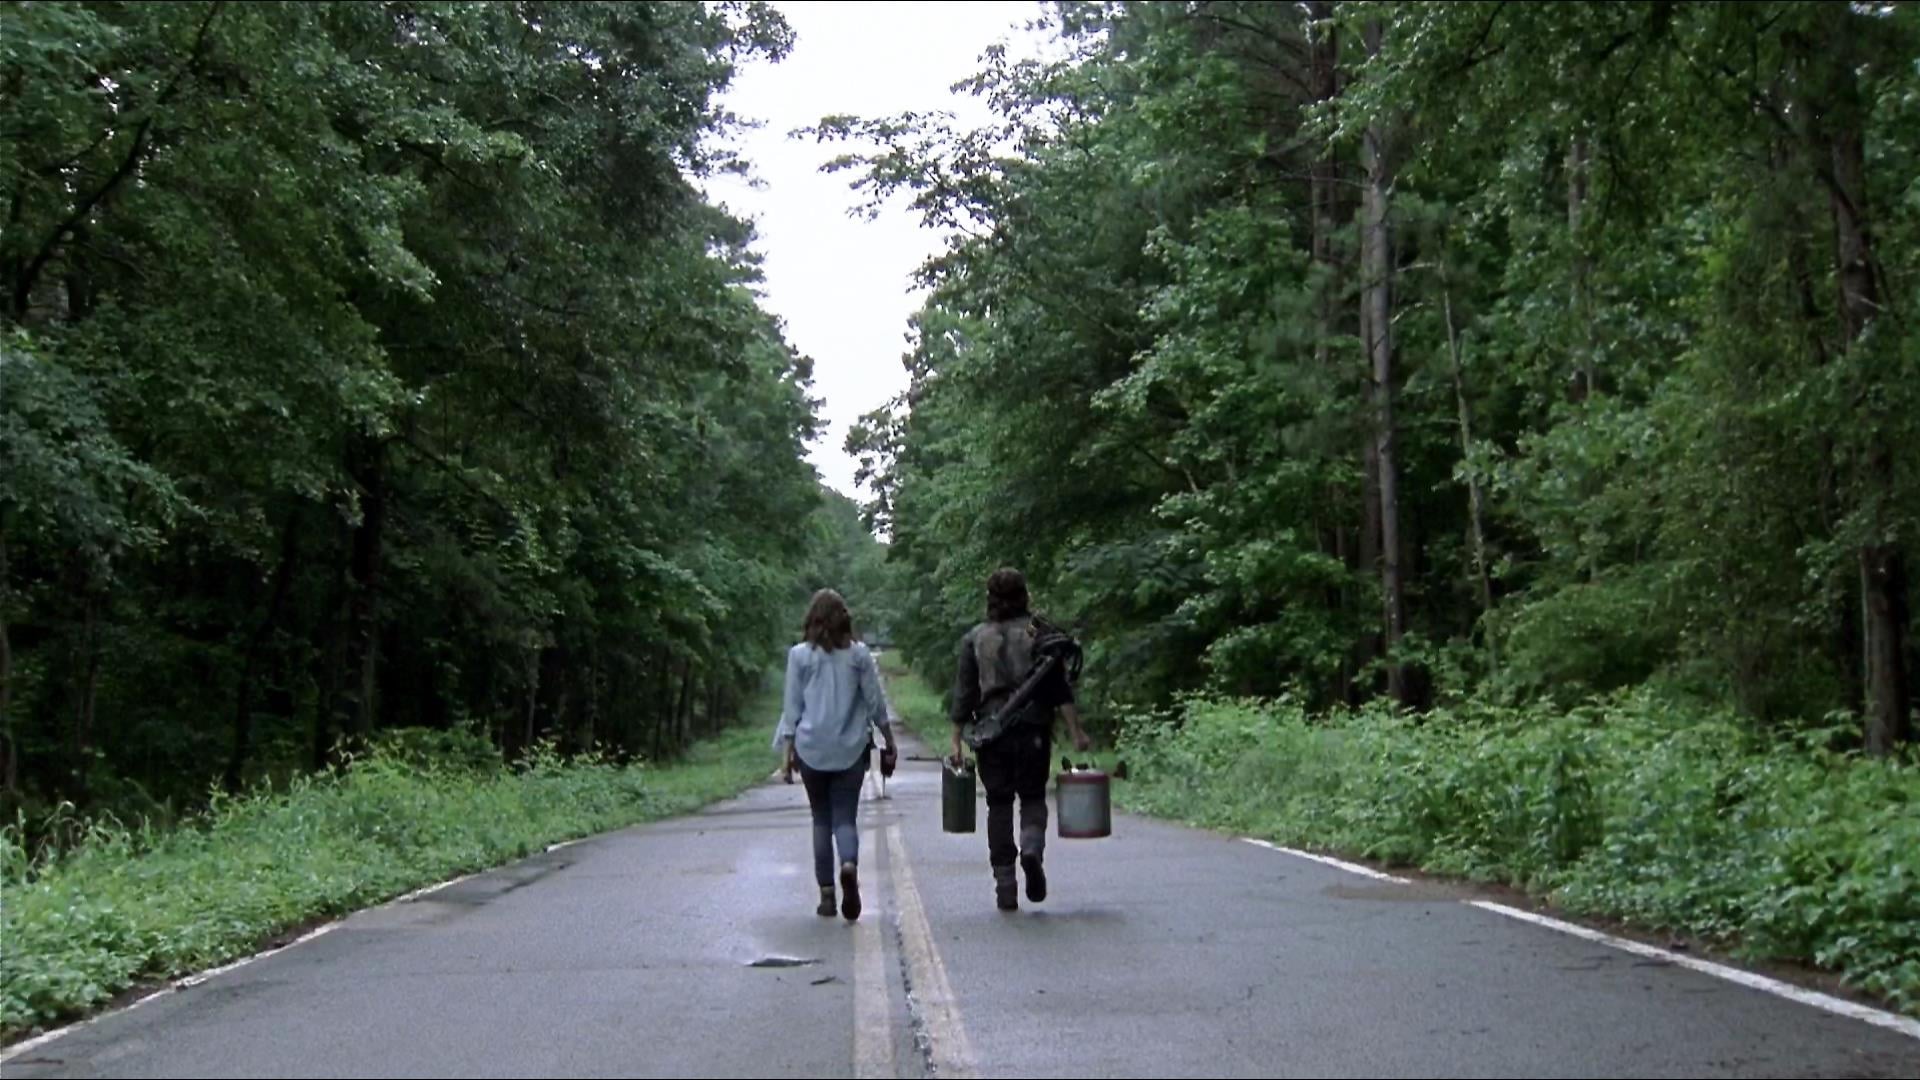 Image The Walking Dead (2010) 1